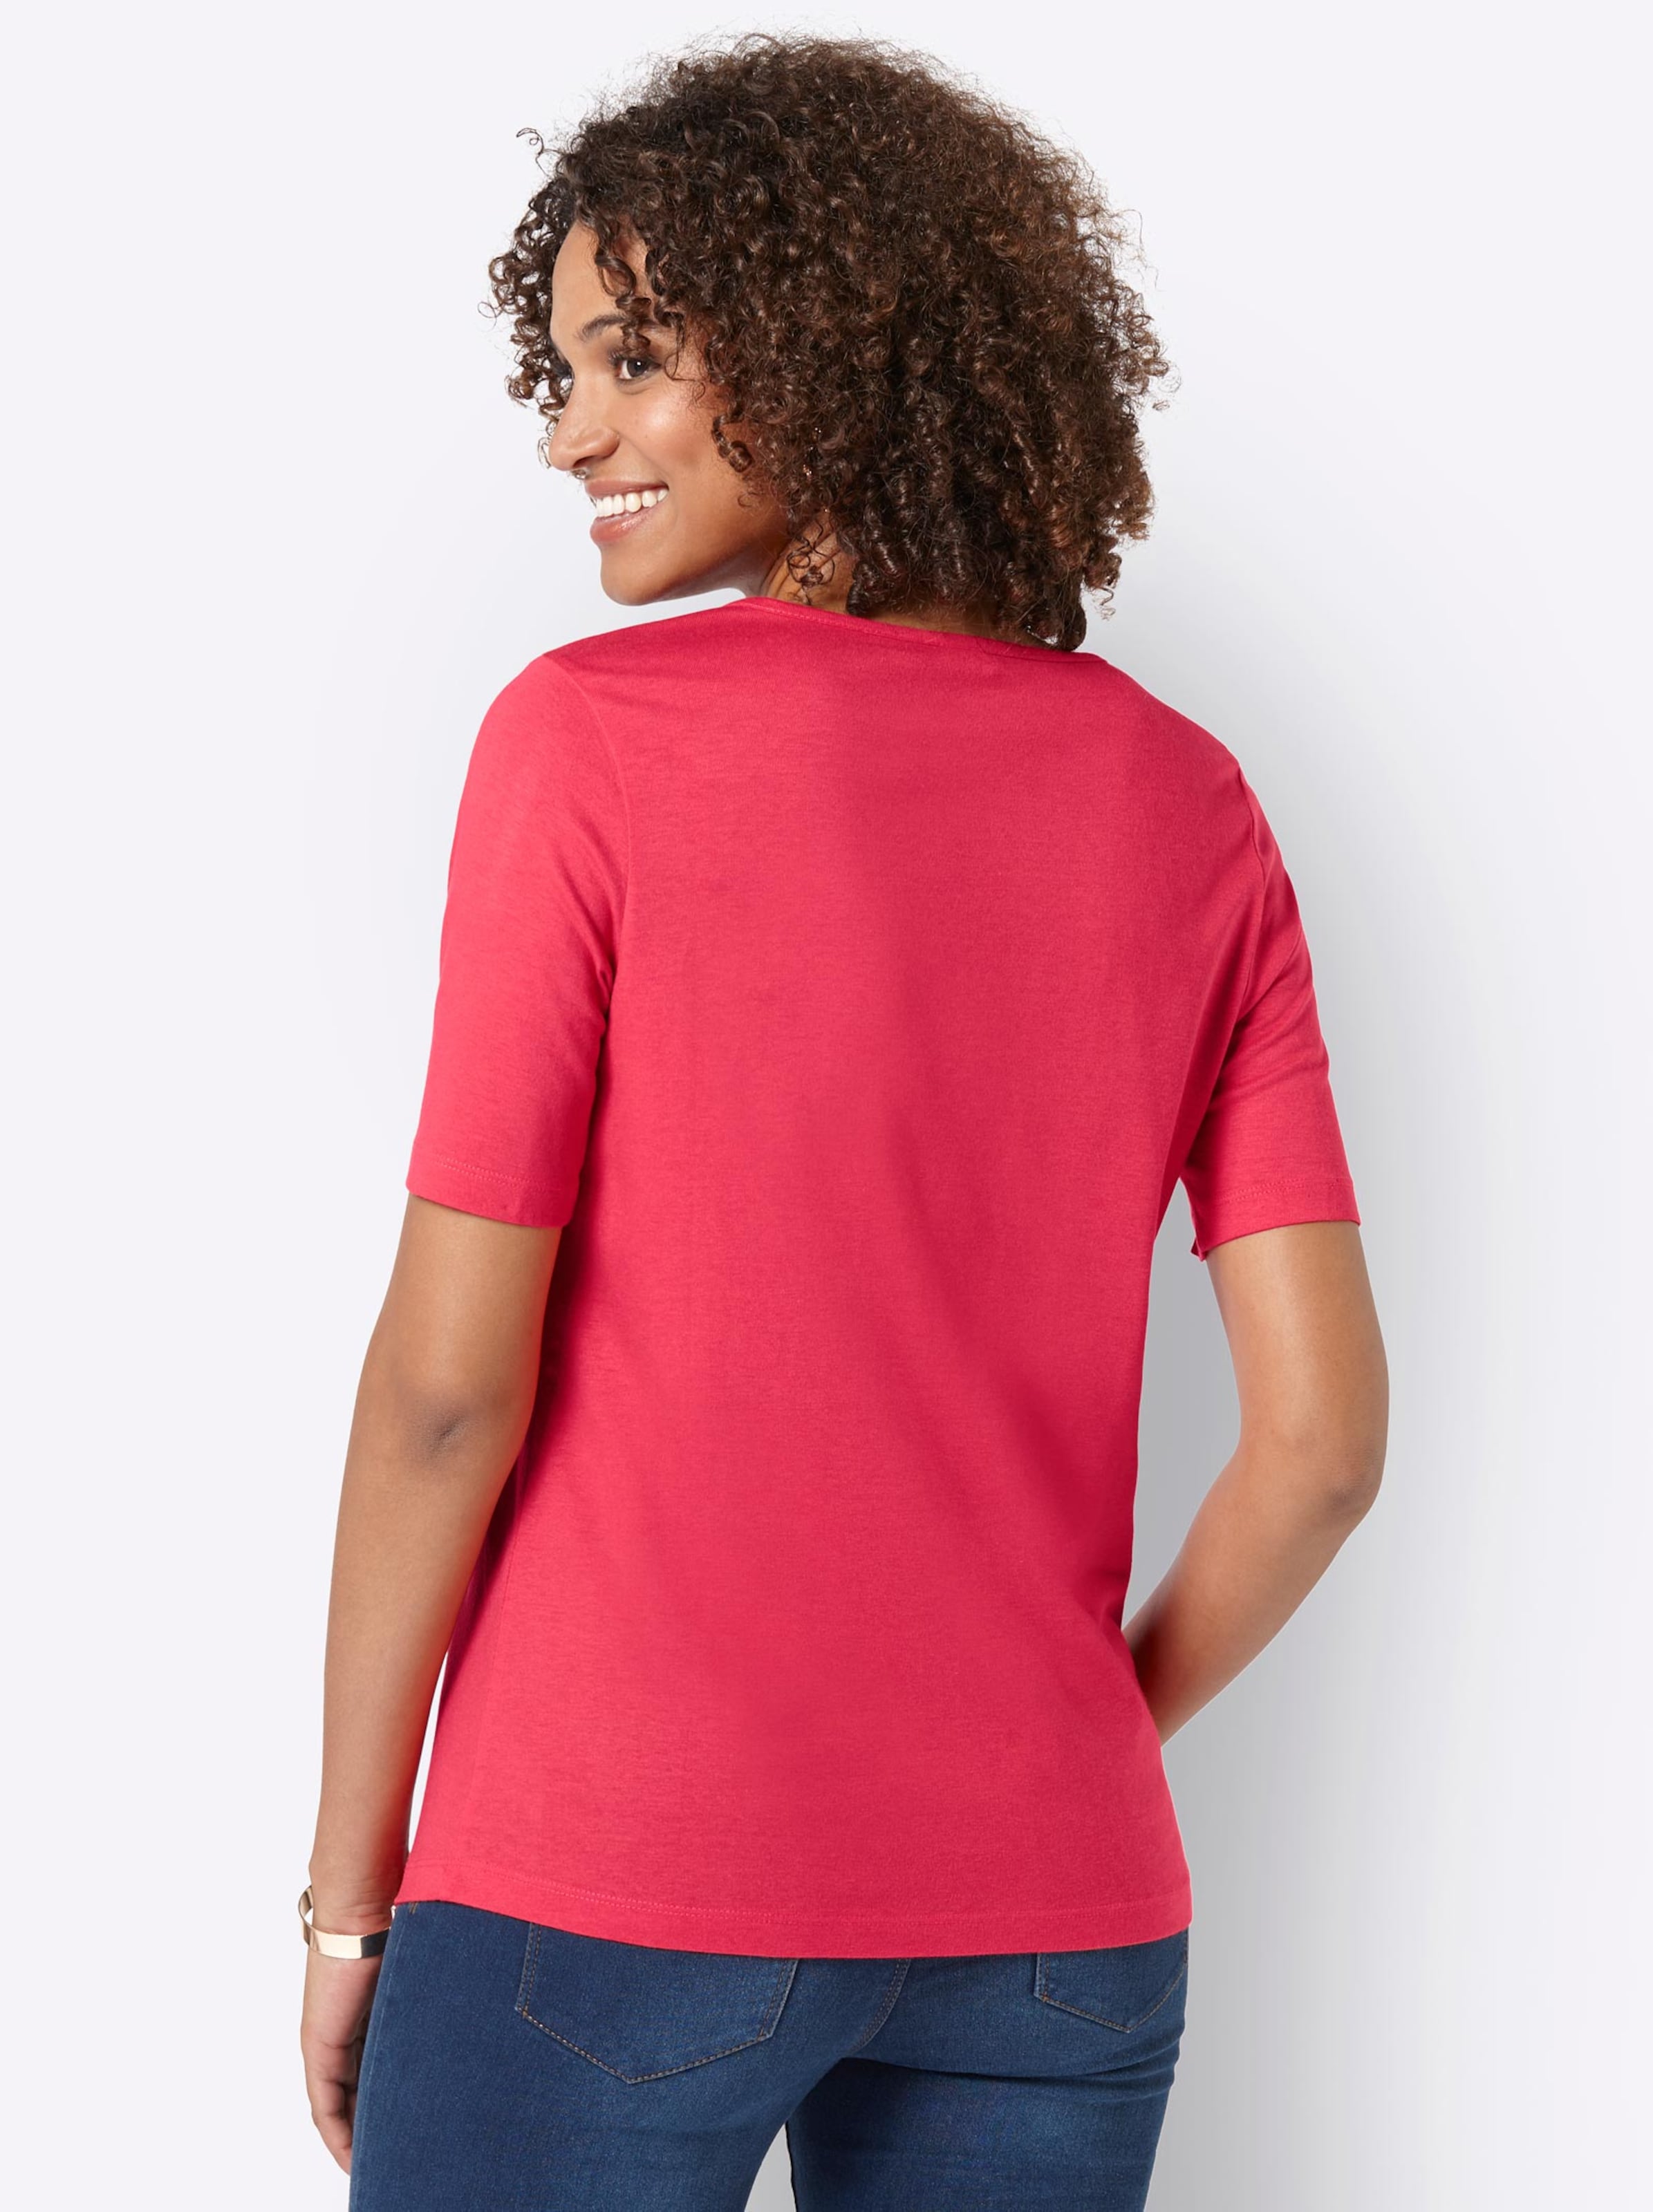 Damenmode Shirts Kurzarmshirt in rot 